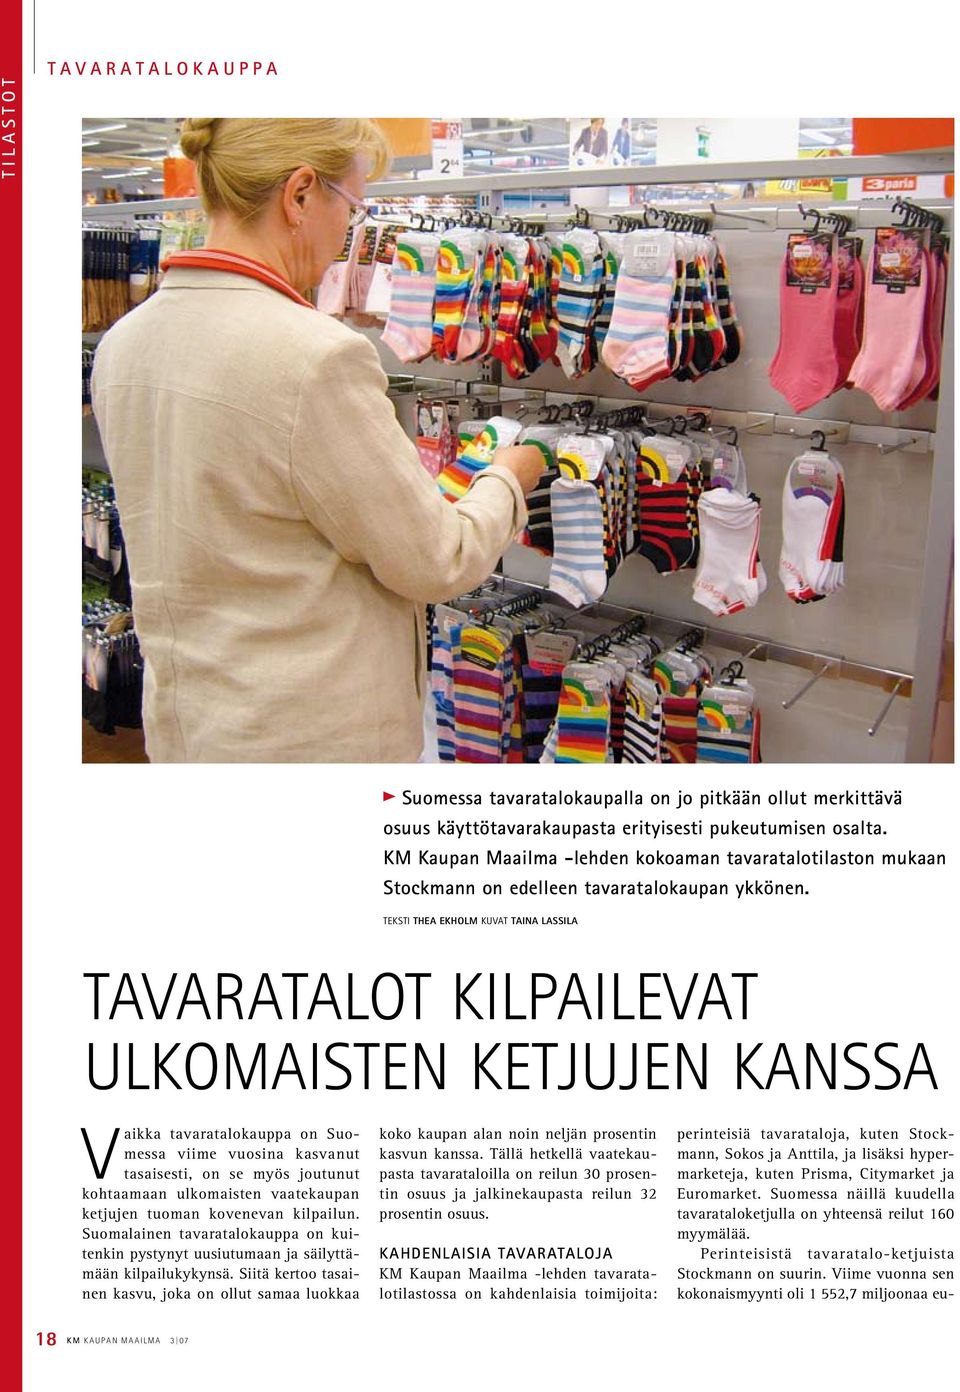 Teksti Thea ekholm kuvat Taina Lassila Tavaratalot kilpailevat ulkomaisten ketjujen kanssa Vaikka tavaratalokauppa on Suomessa viime vuosina kasvanut tasaisesti, on se myös joutunut kohtaamaan